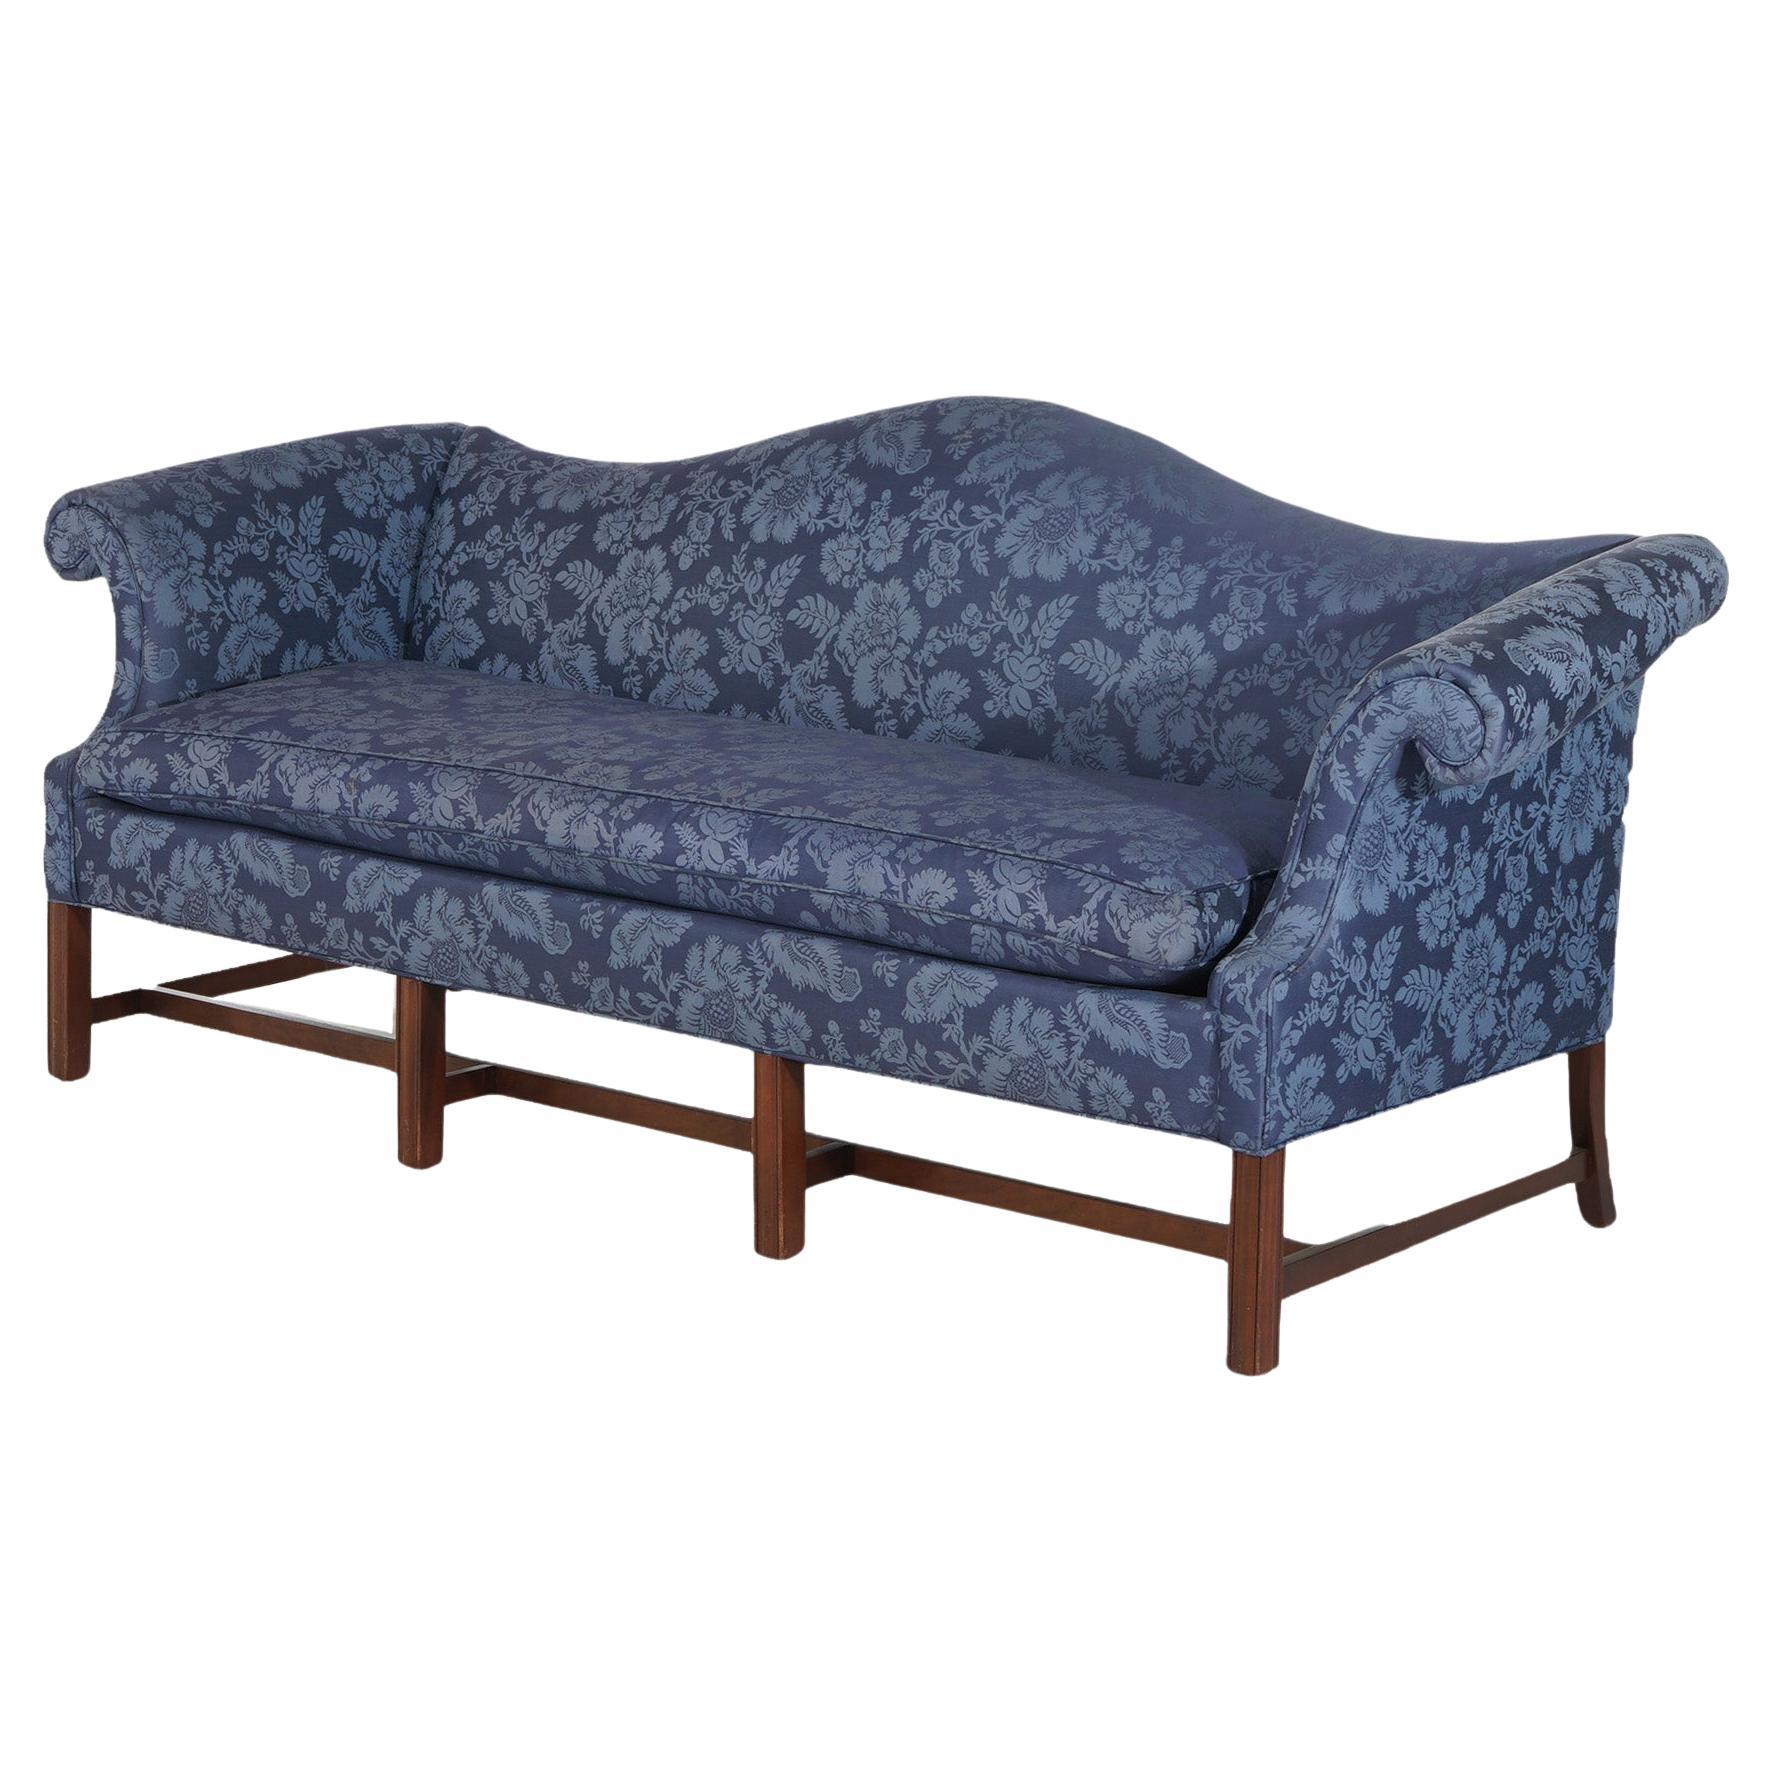 Antikes Chippendale-Sofa mit Kamelrückenlehne und Schnörkelarmlehnen, blau, um 1930